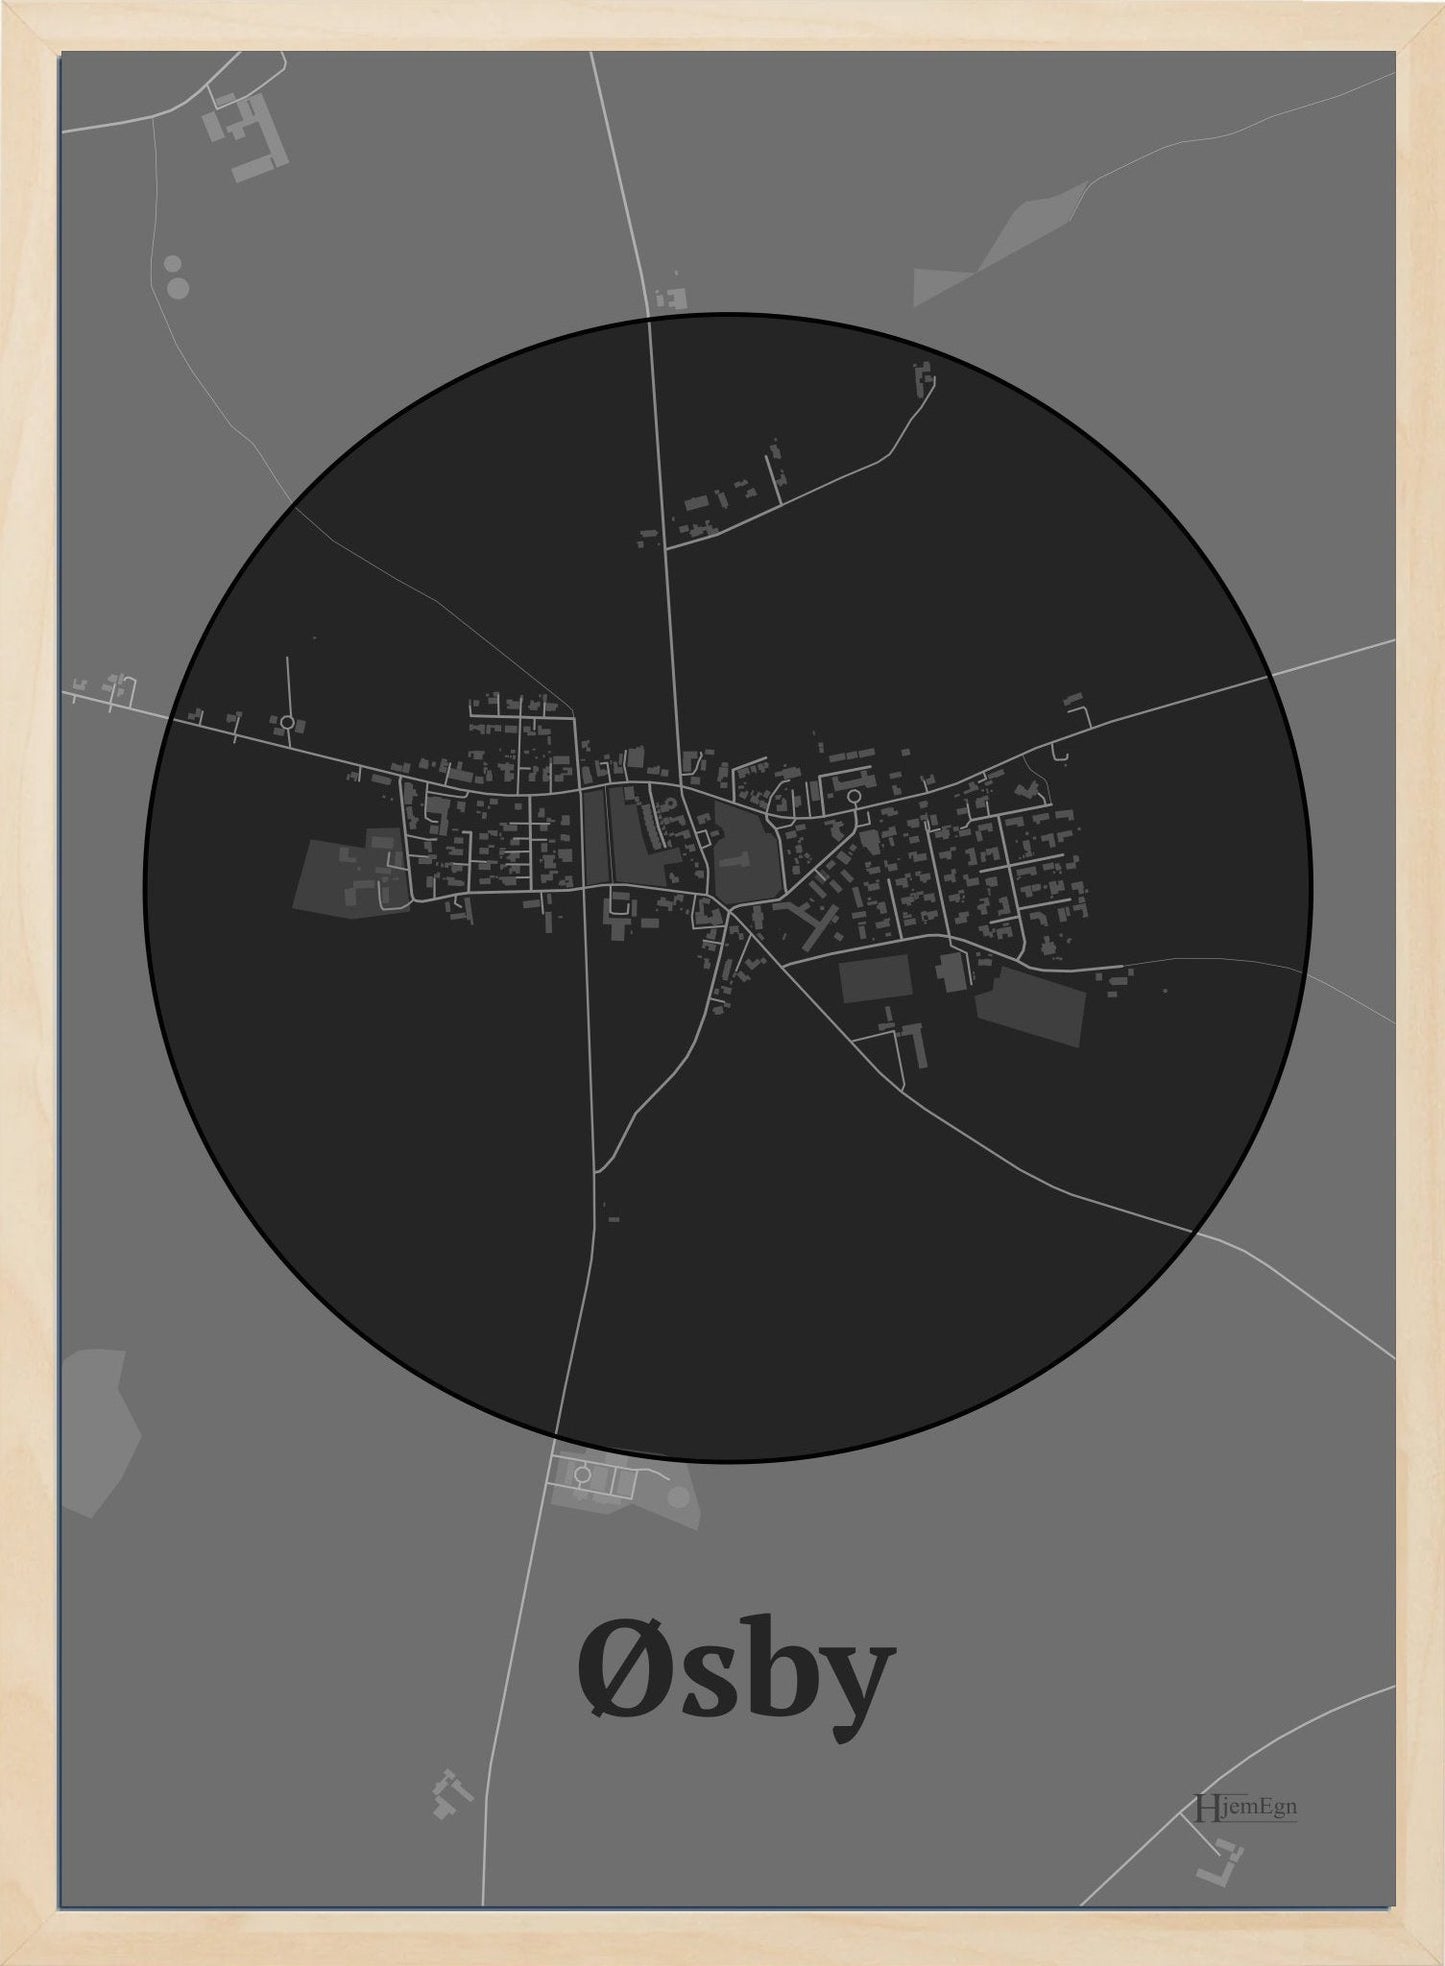 Øsby plakat i farve mørk grå og HjemEgn.dk design centrum. Design bykort for Øsby